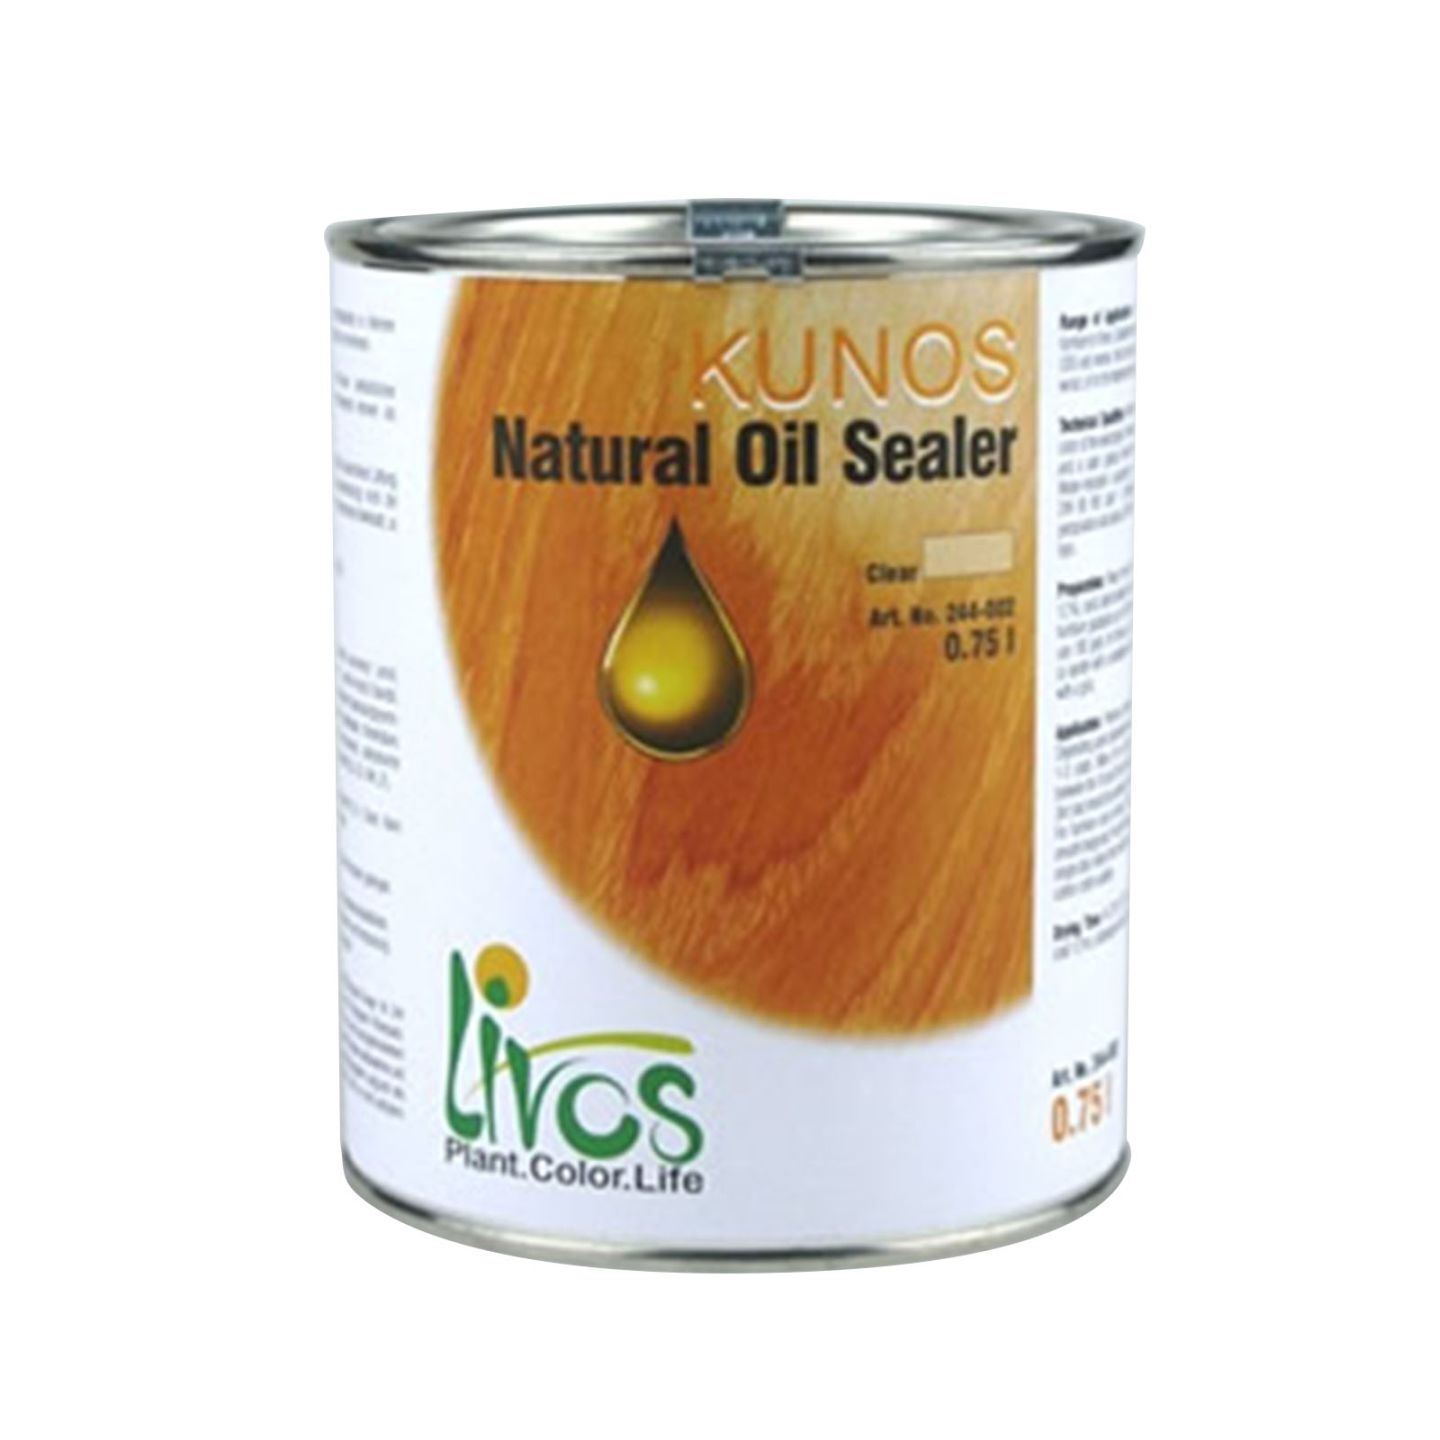 KUNOS Natural Oil Sealer Clear 0.05 Litre